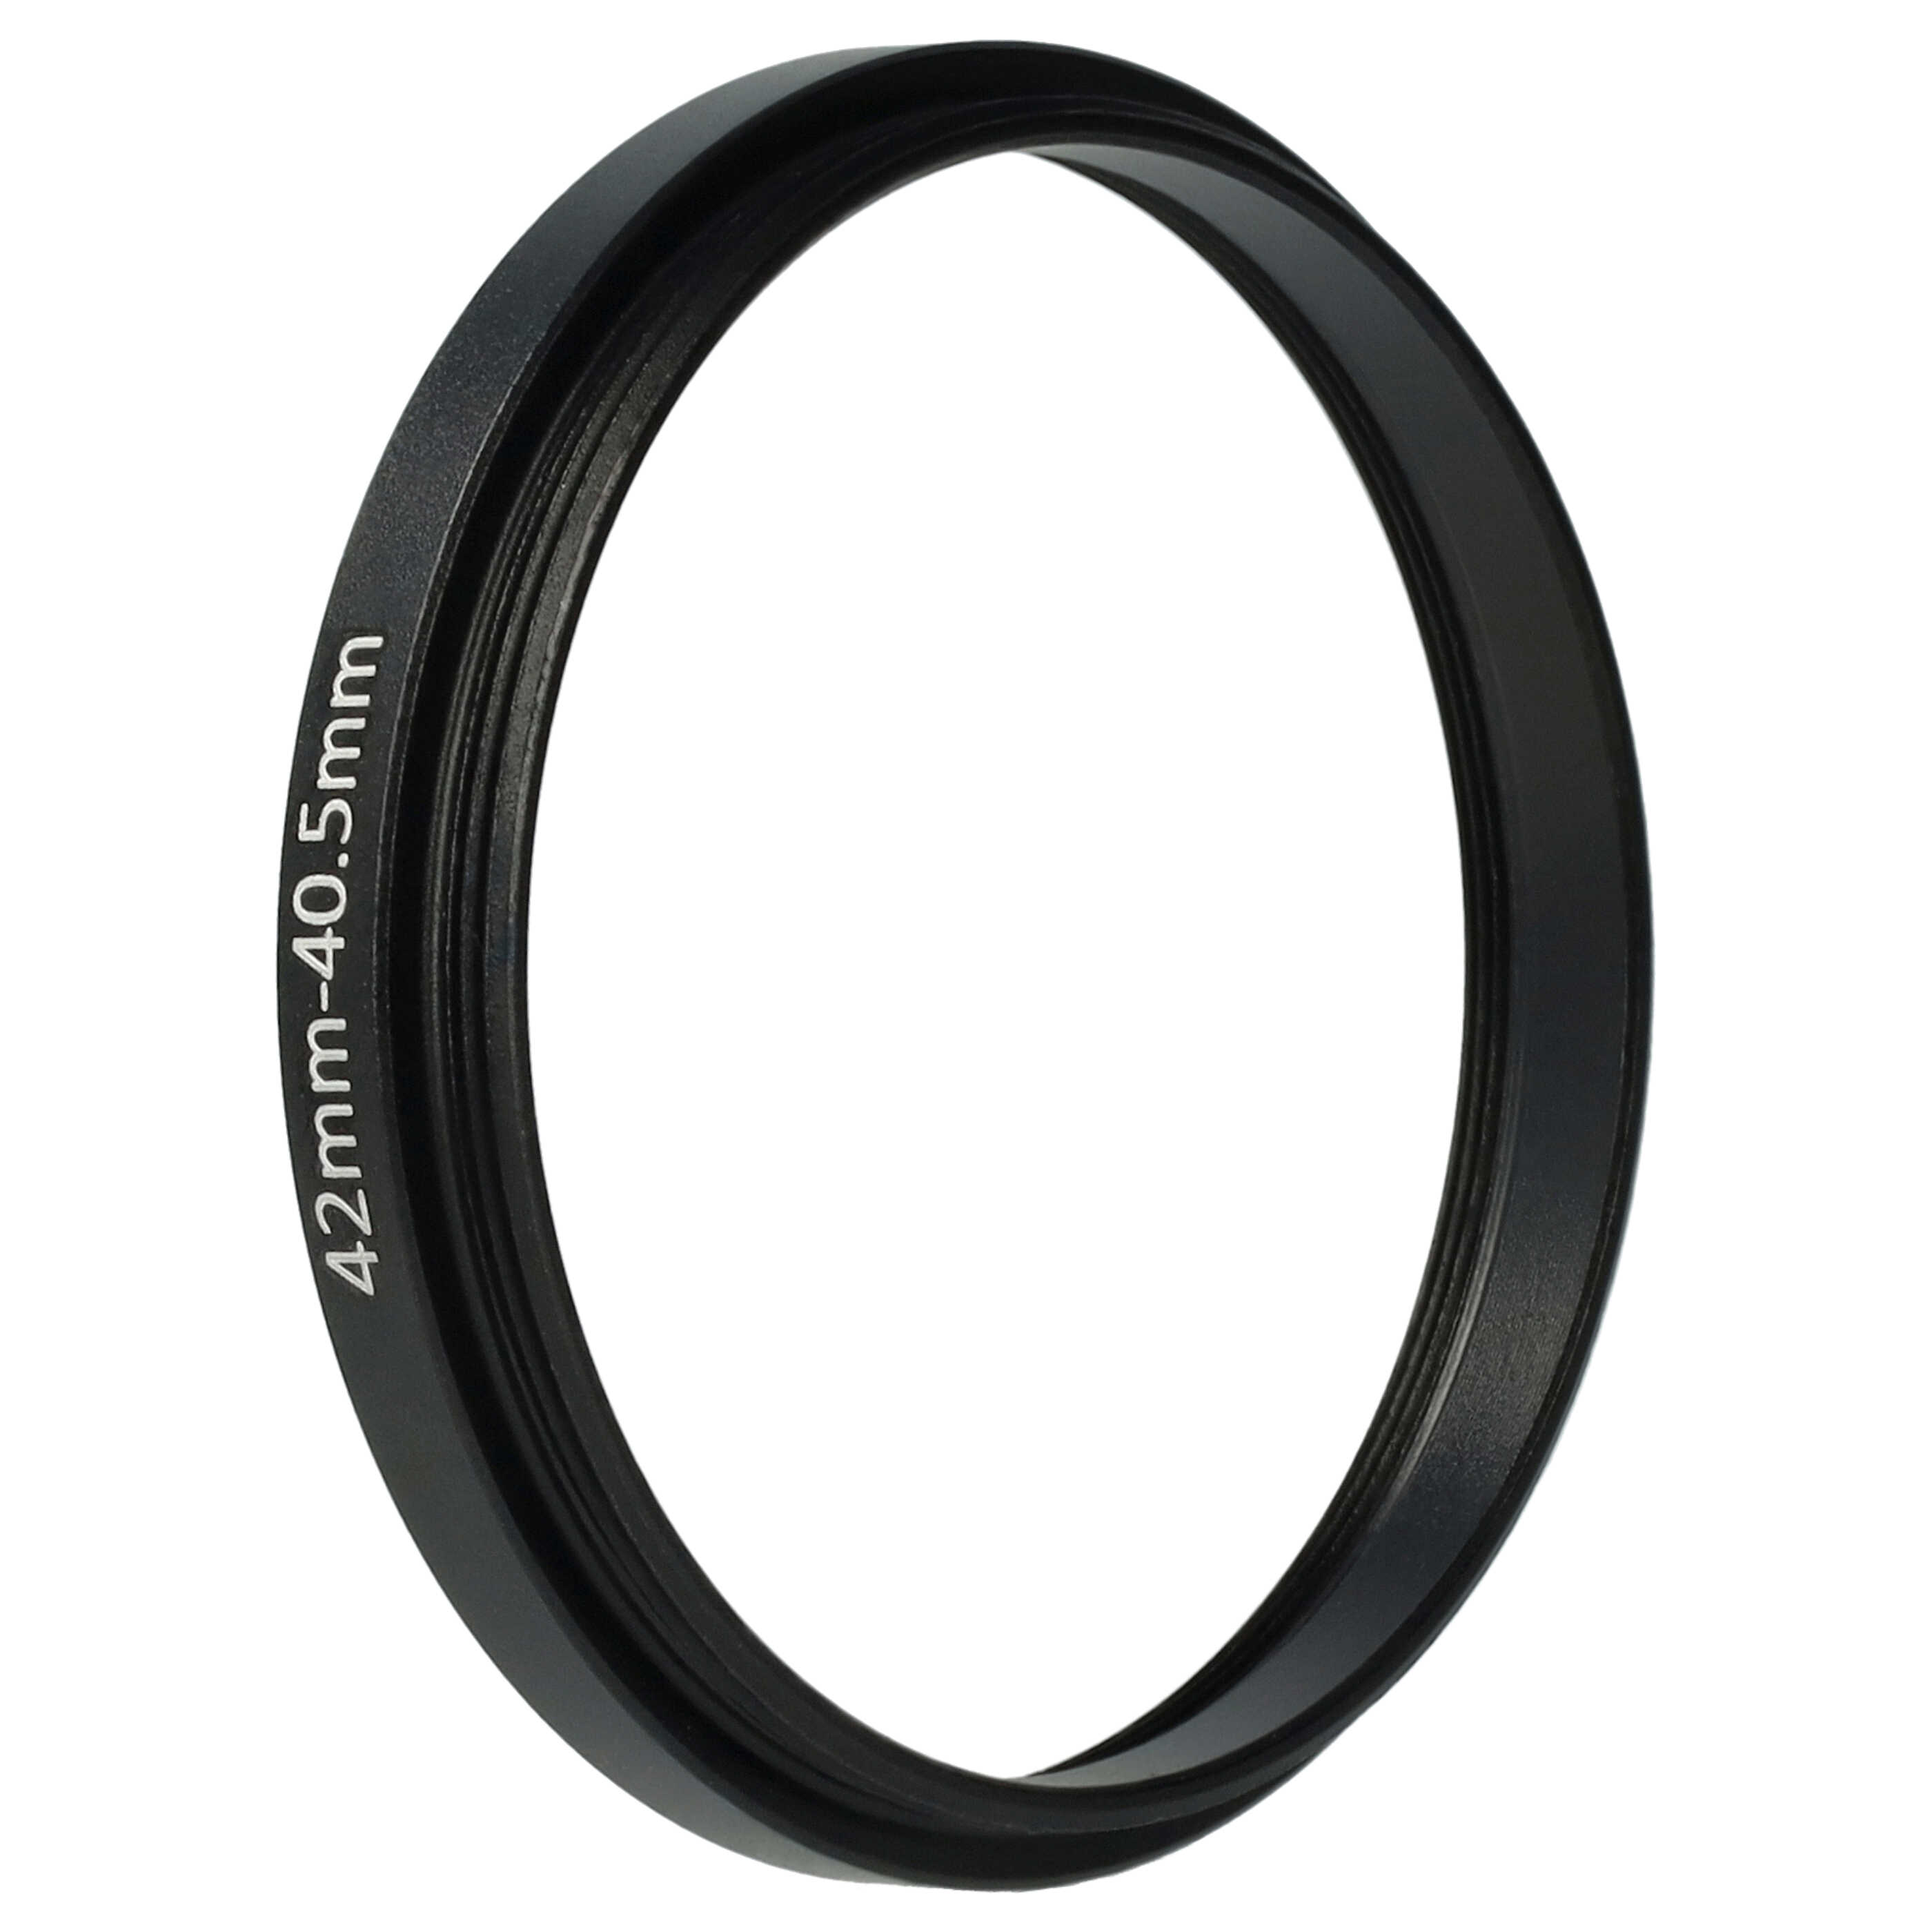 Anello adattatore step-down da 42 mm a 40,5 mm per obiettivo fotocamera - Adattatore filtro, metallo, nero